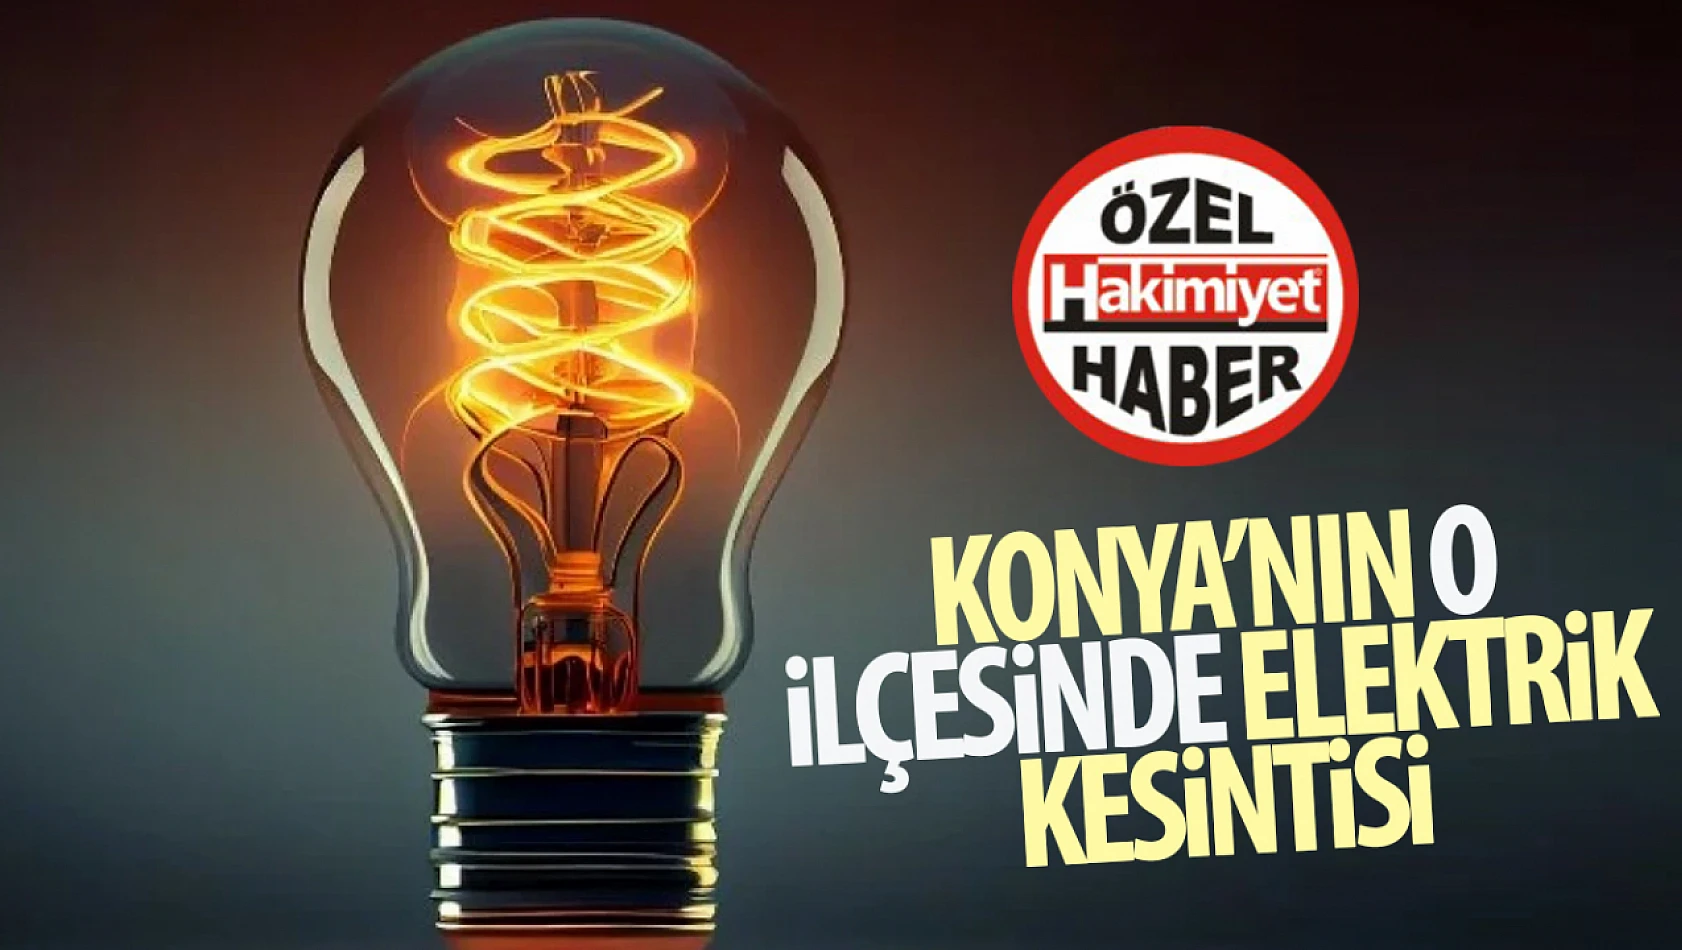 Konya'nın o ilçesinde elektrik kesintisi yaşanacak!